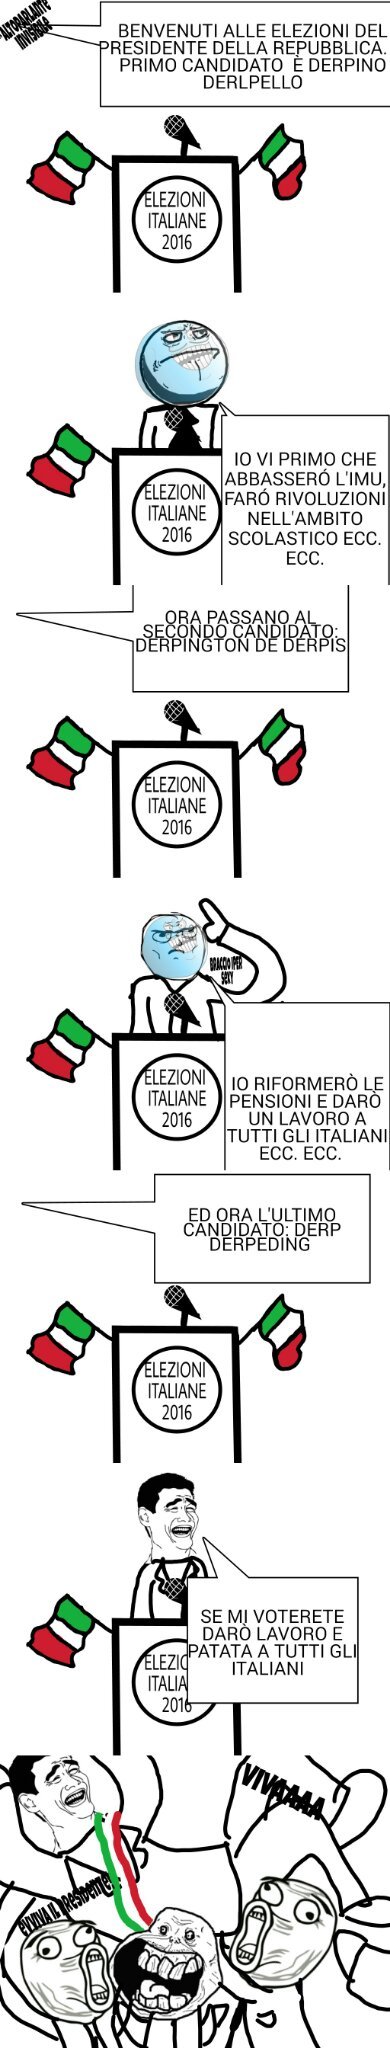 Vota Antonio italianiiiii - meme